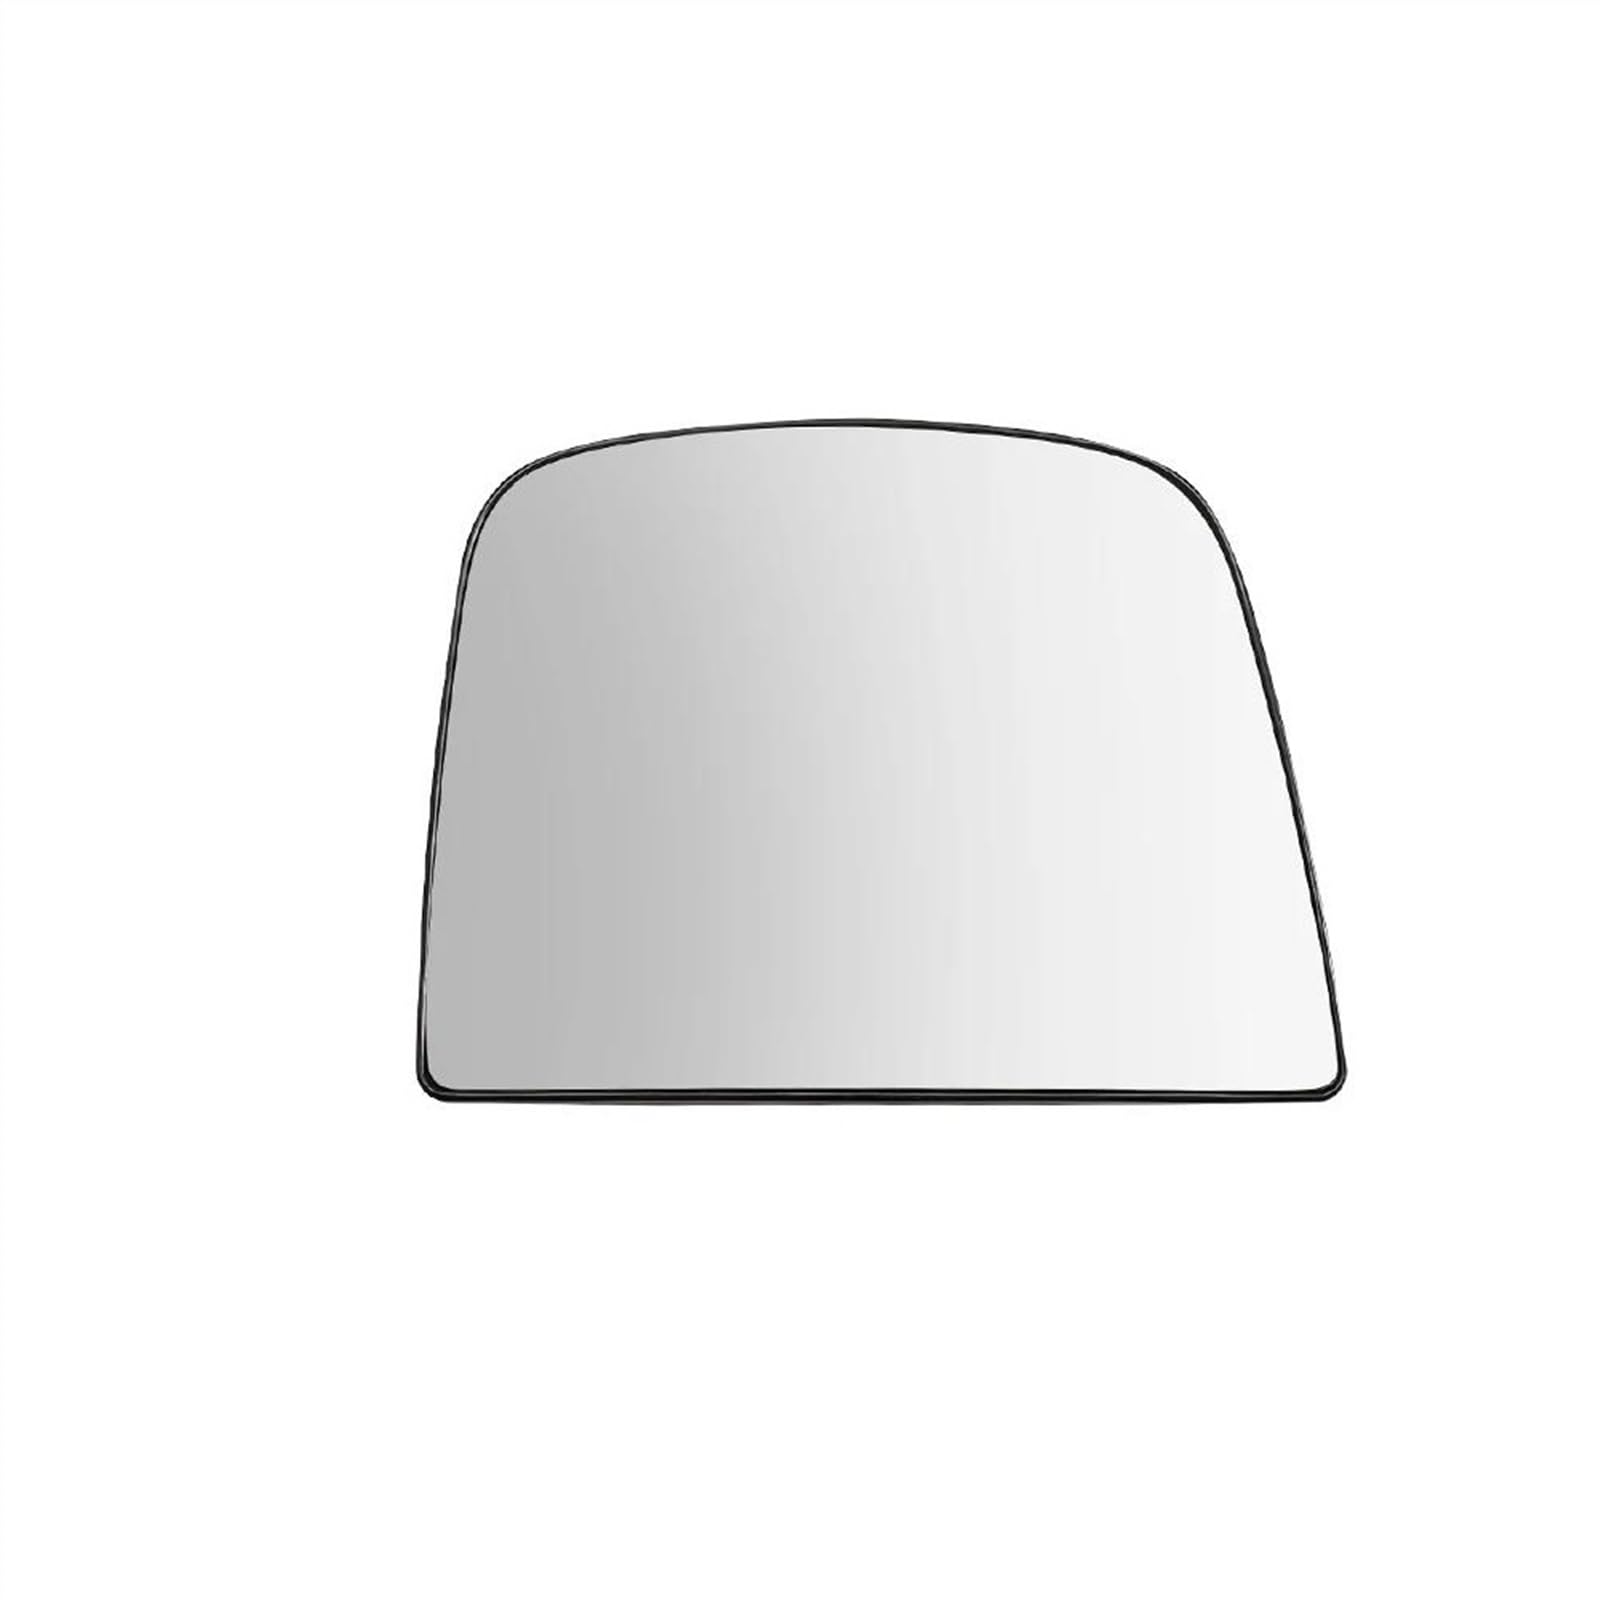 Beheiztes Seitenspiegelglas Fürs Auto Für C&hevrolet Für Chevy Für Express 2008-2020 2021 2022(rechte Seite) von KMAGE